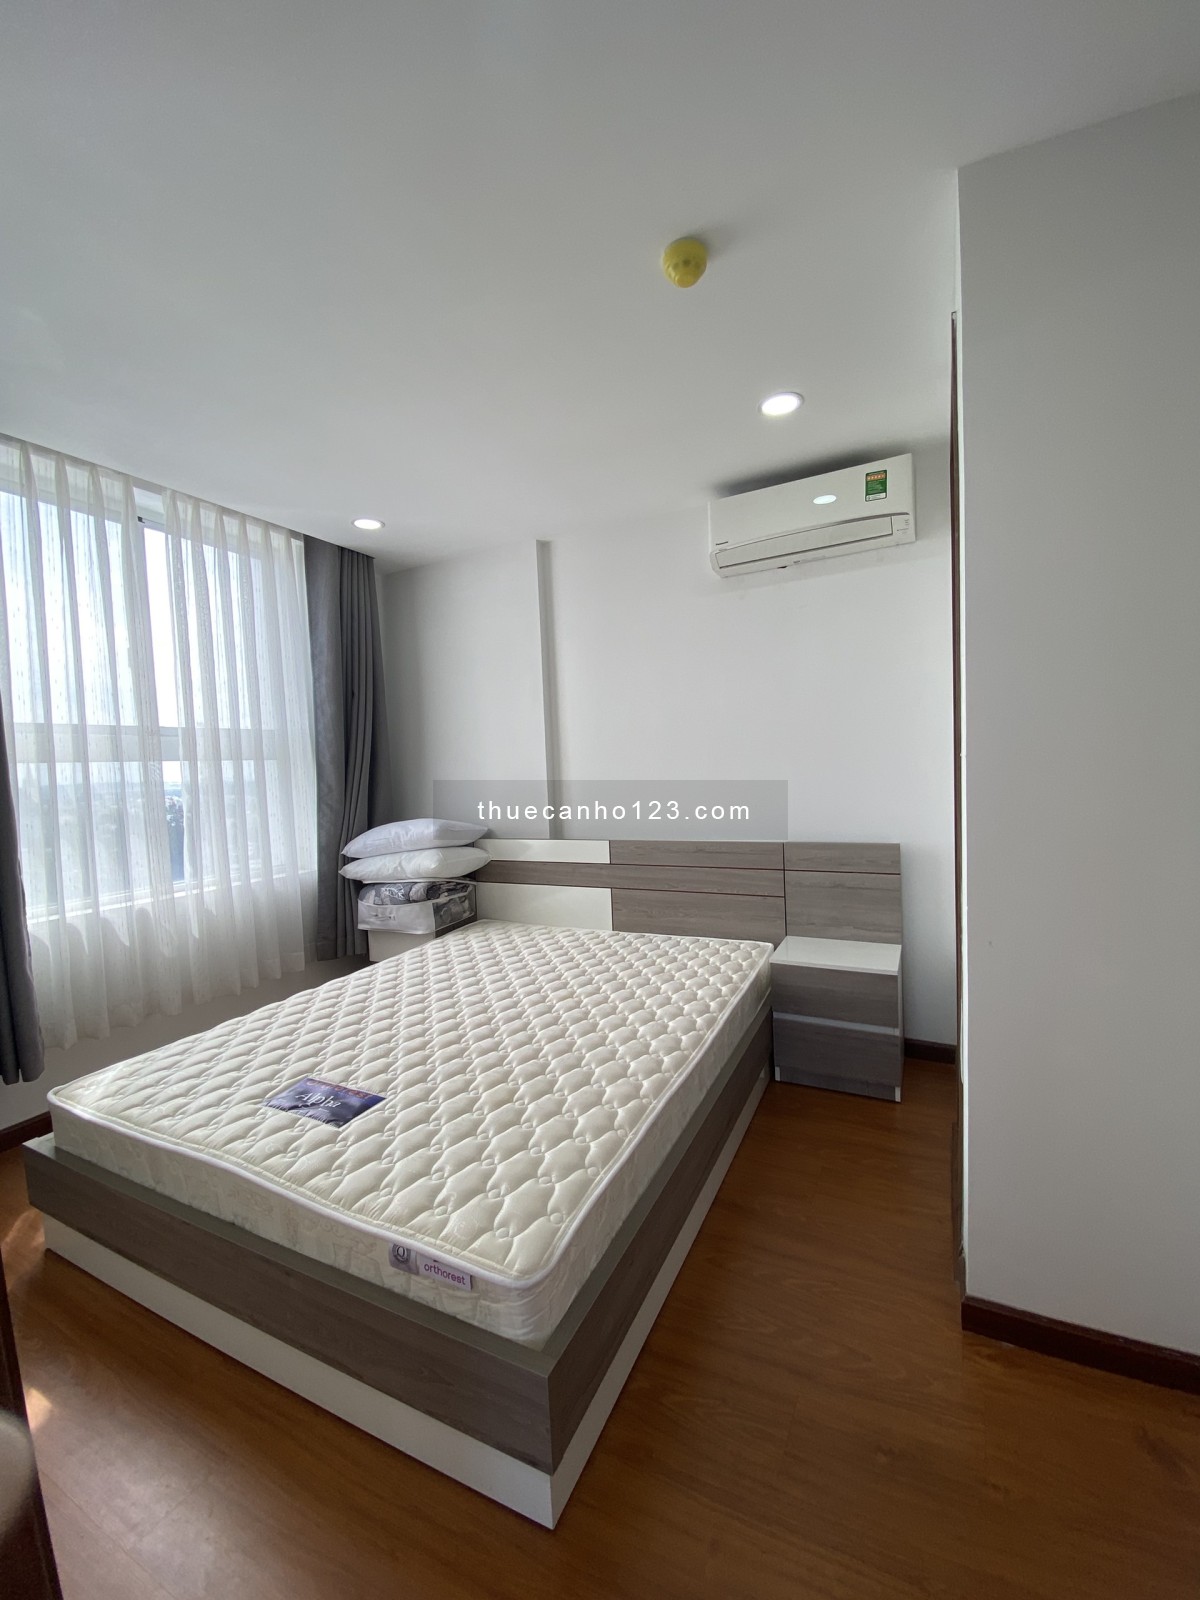 Cho thuê căn hộ Samsora 1 phòng ngủ chính+ phòng phụ, giá từ 3,5tr/tháng